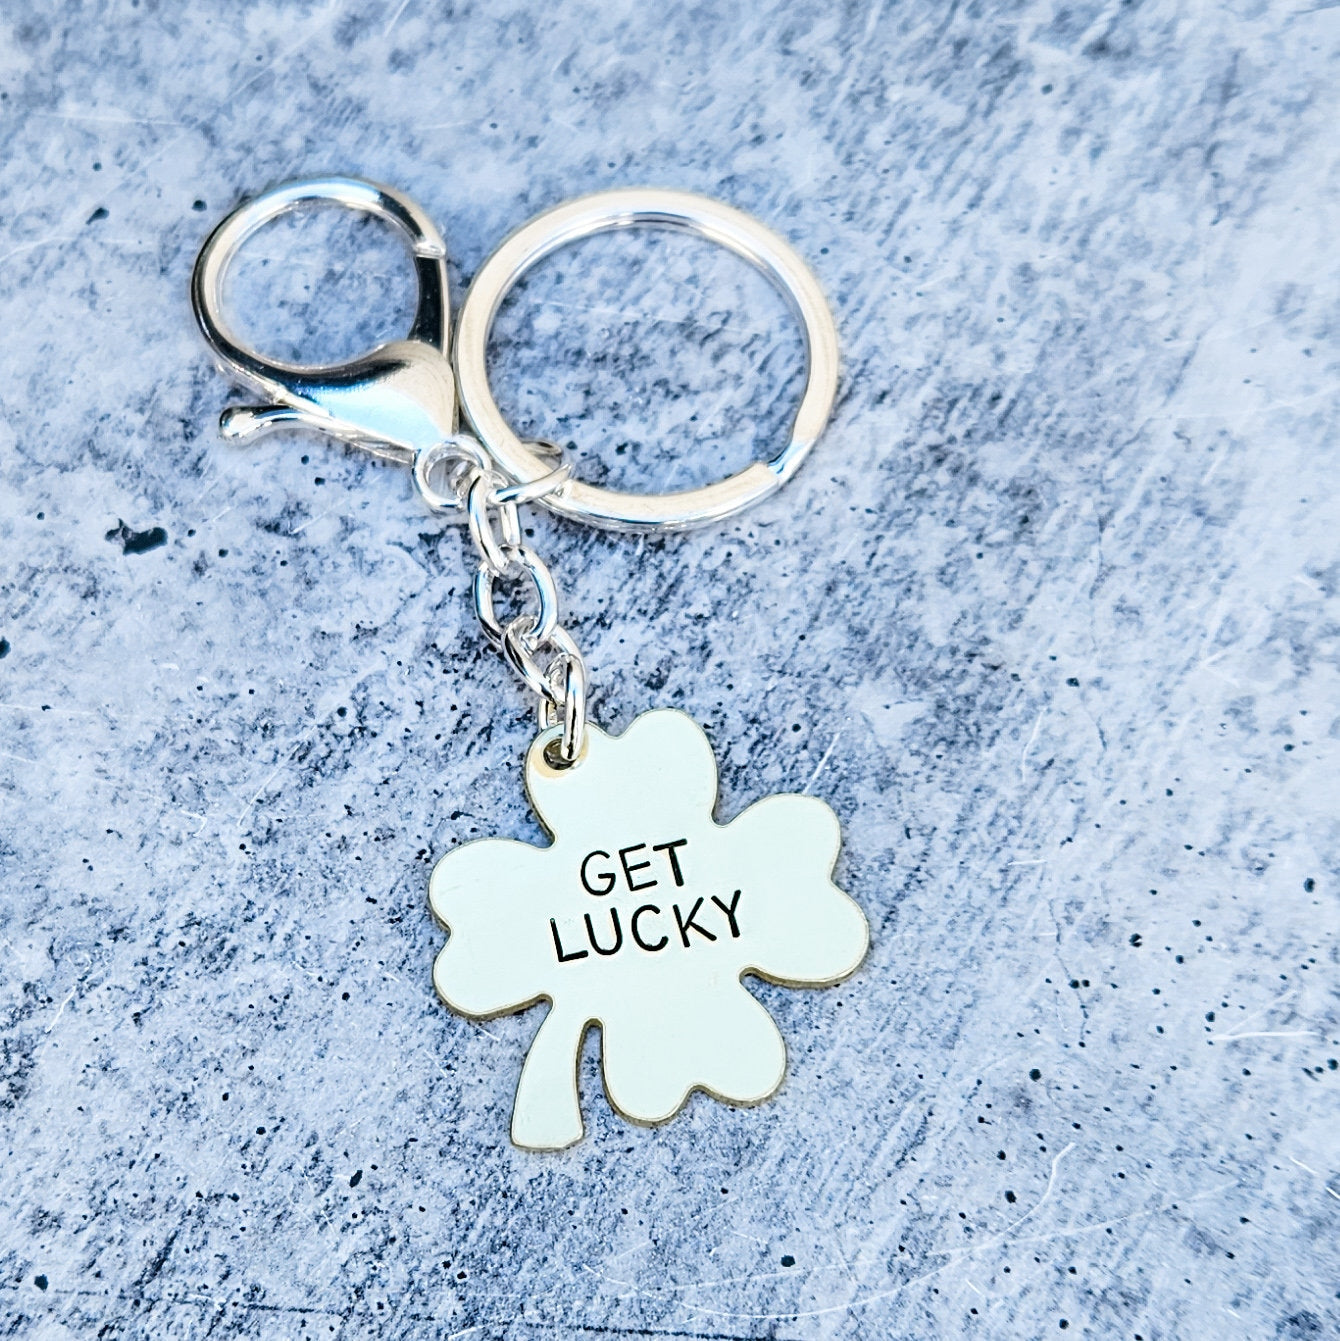 Lucky Charm Four Leaf Clover - St. Patrick's Day Minimalist Keychain Salt and Sparkle